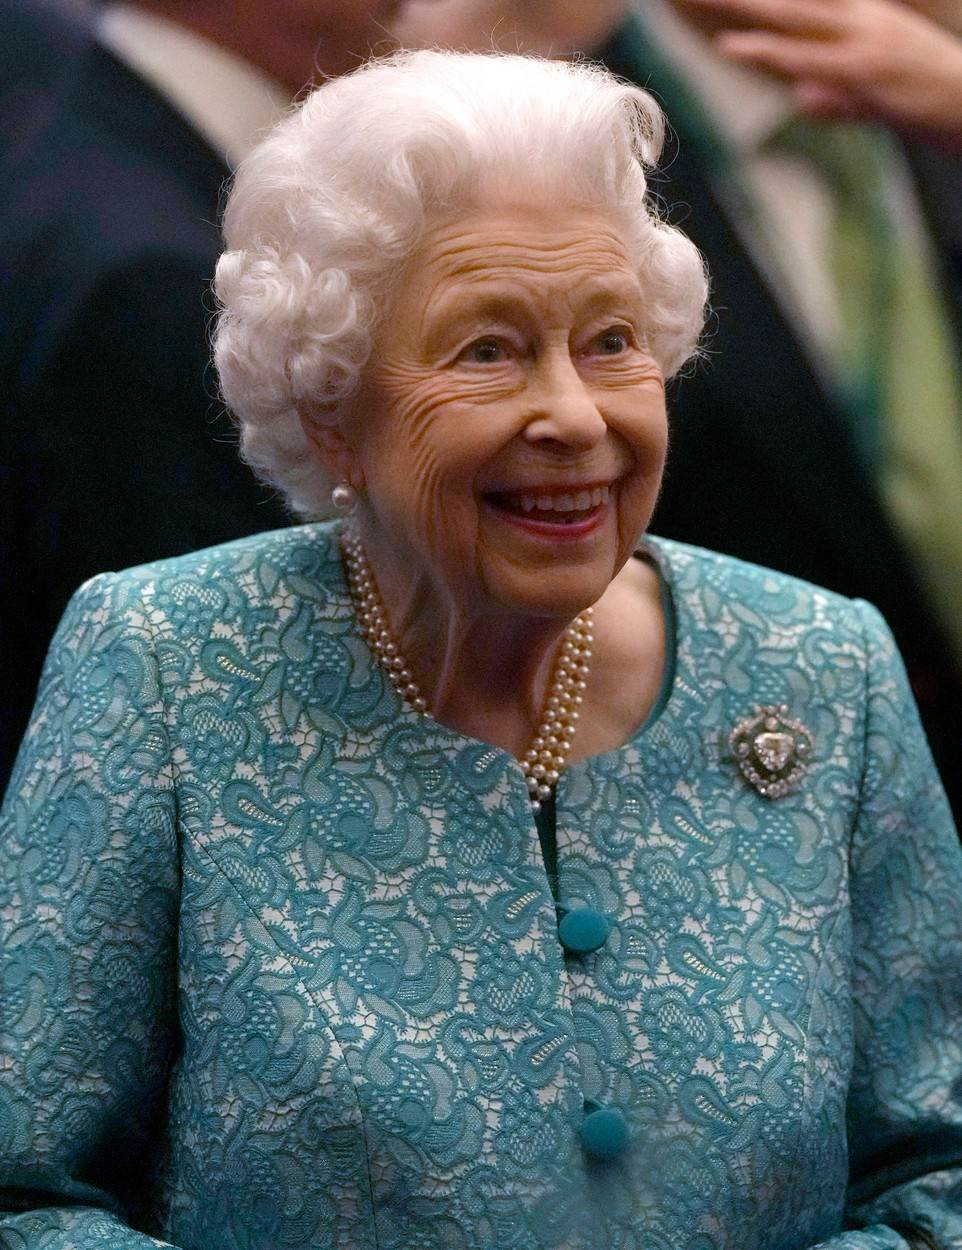 Kraljica Elizabeta II. navodno je upoznala unuku Lilibet